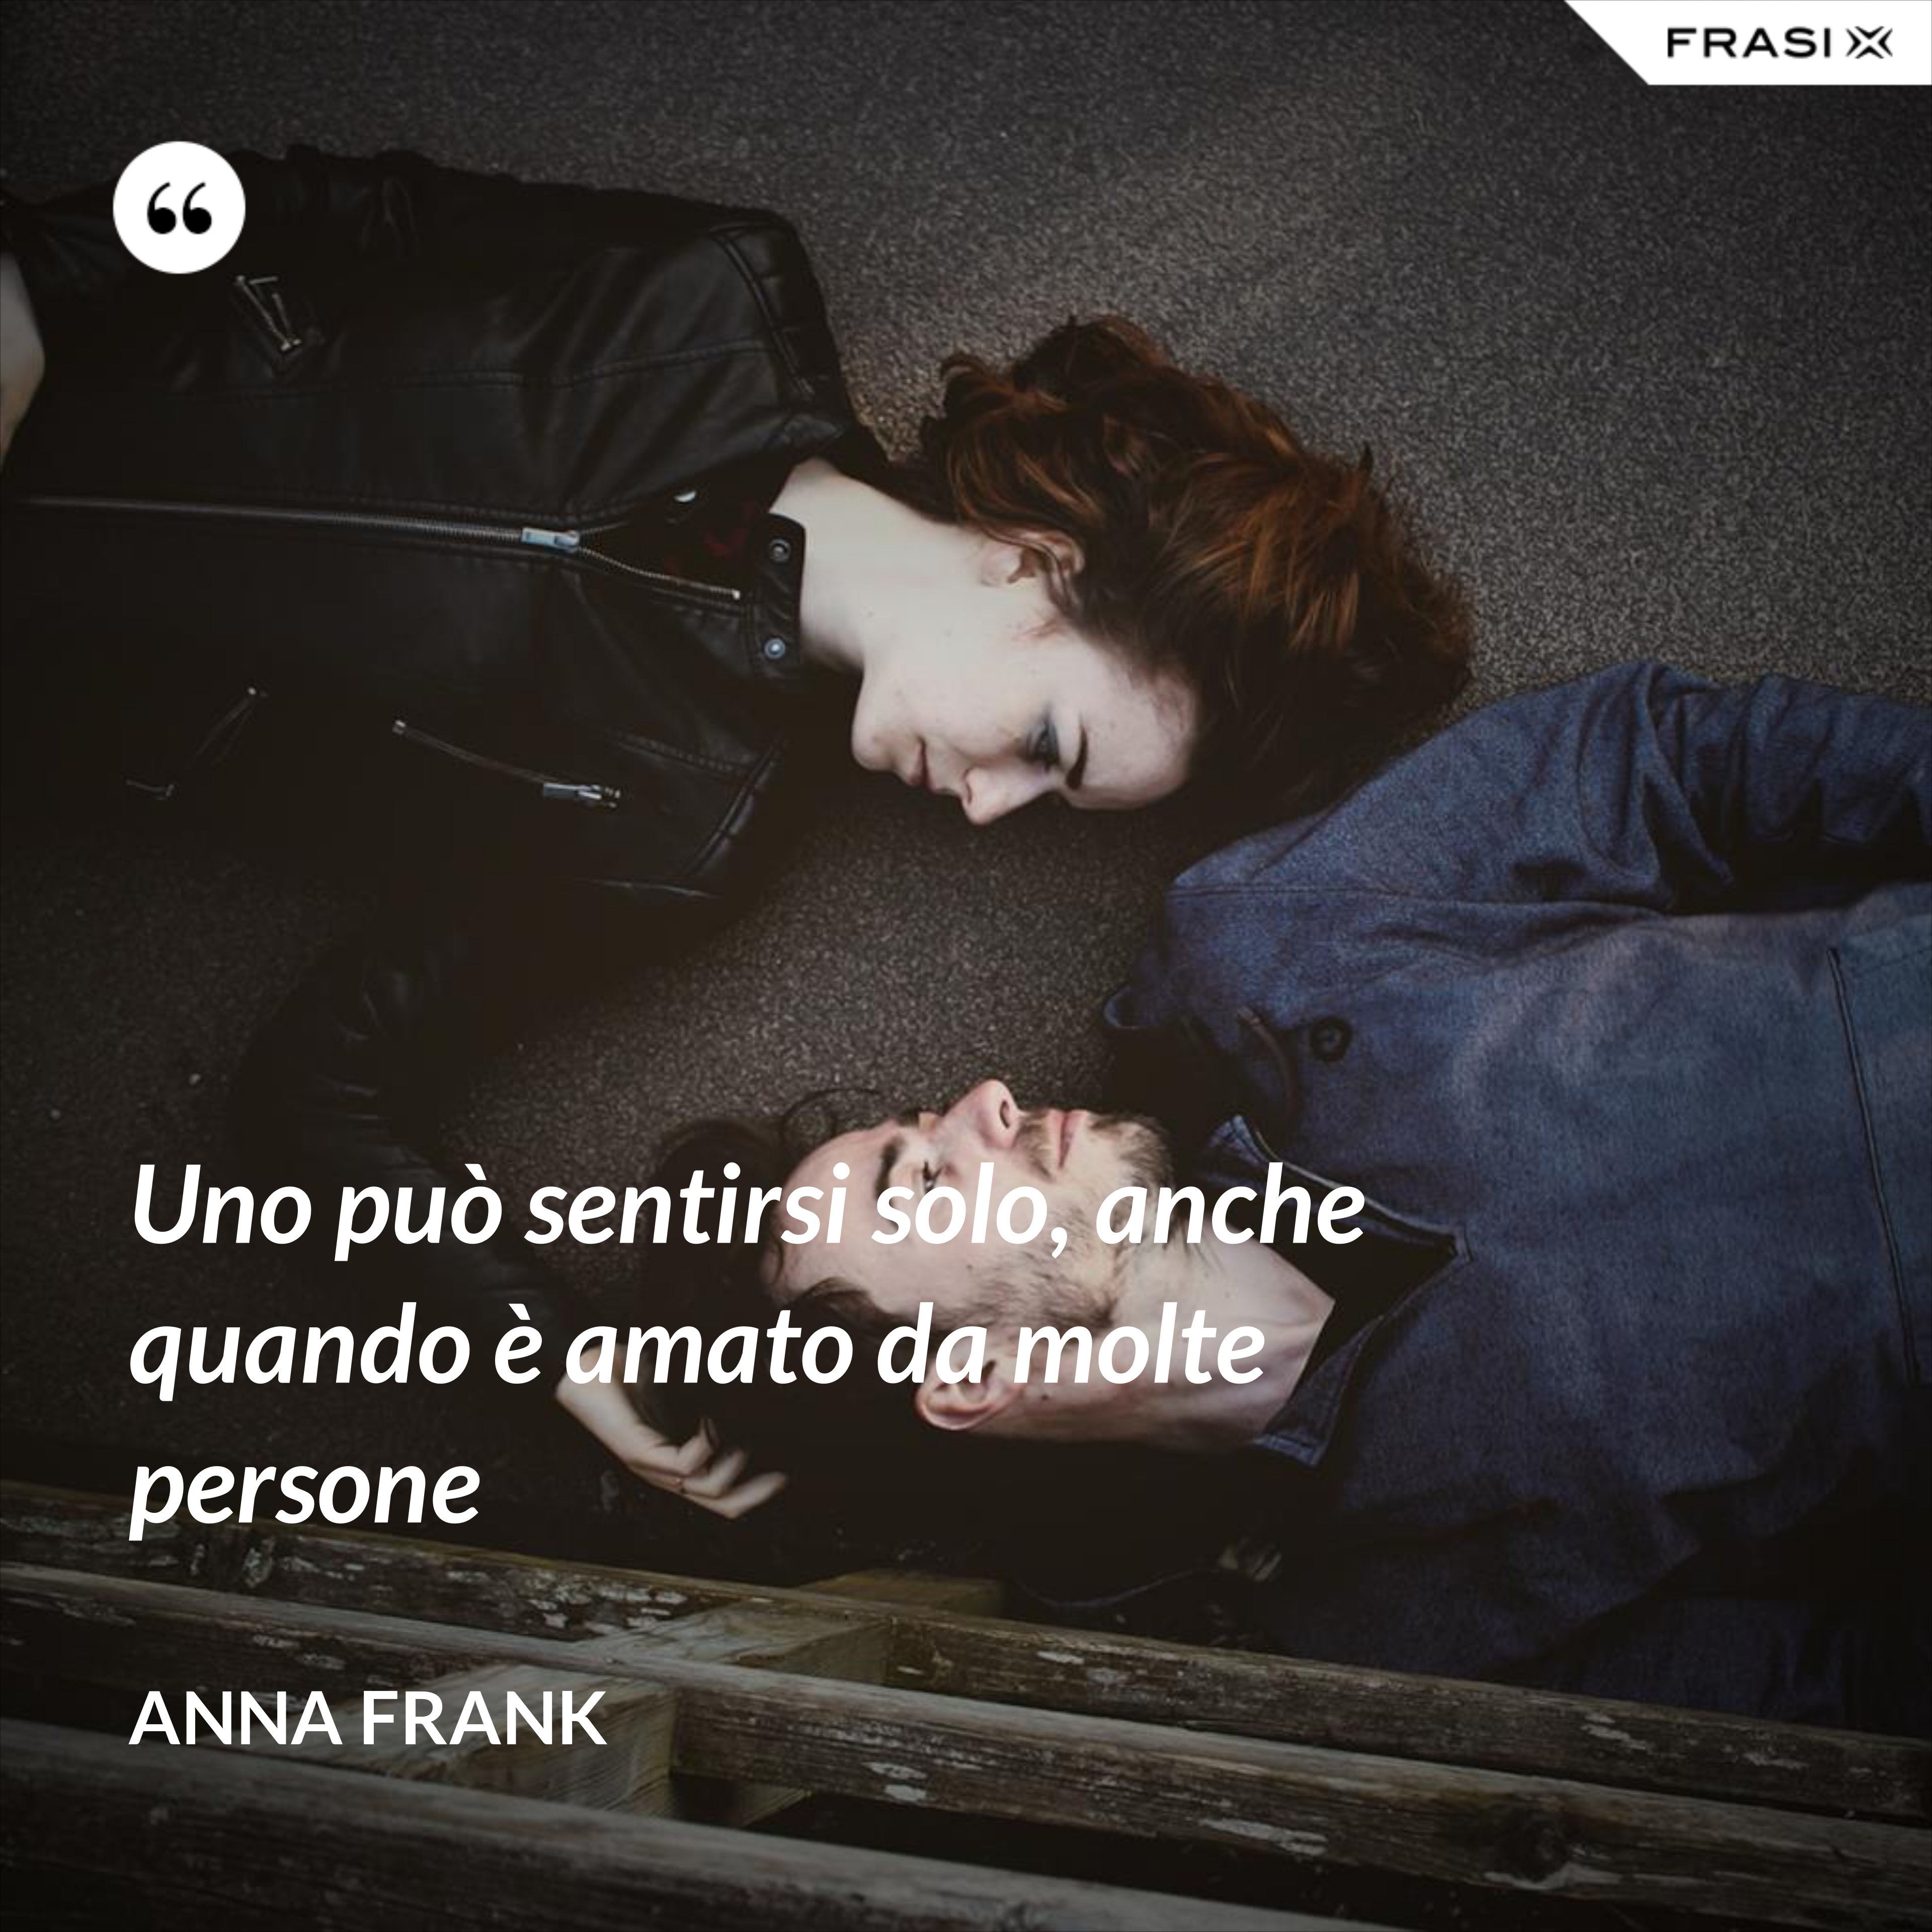 Uno può sentirsi solo, anche quando è amato da molte persone - Anna Frank